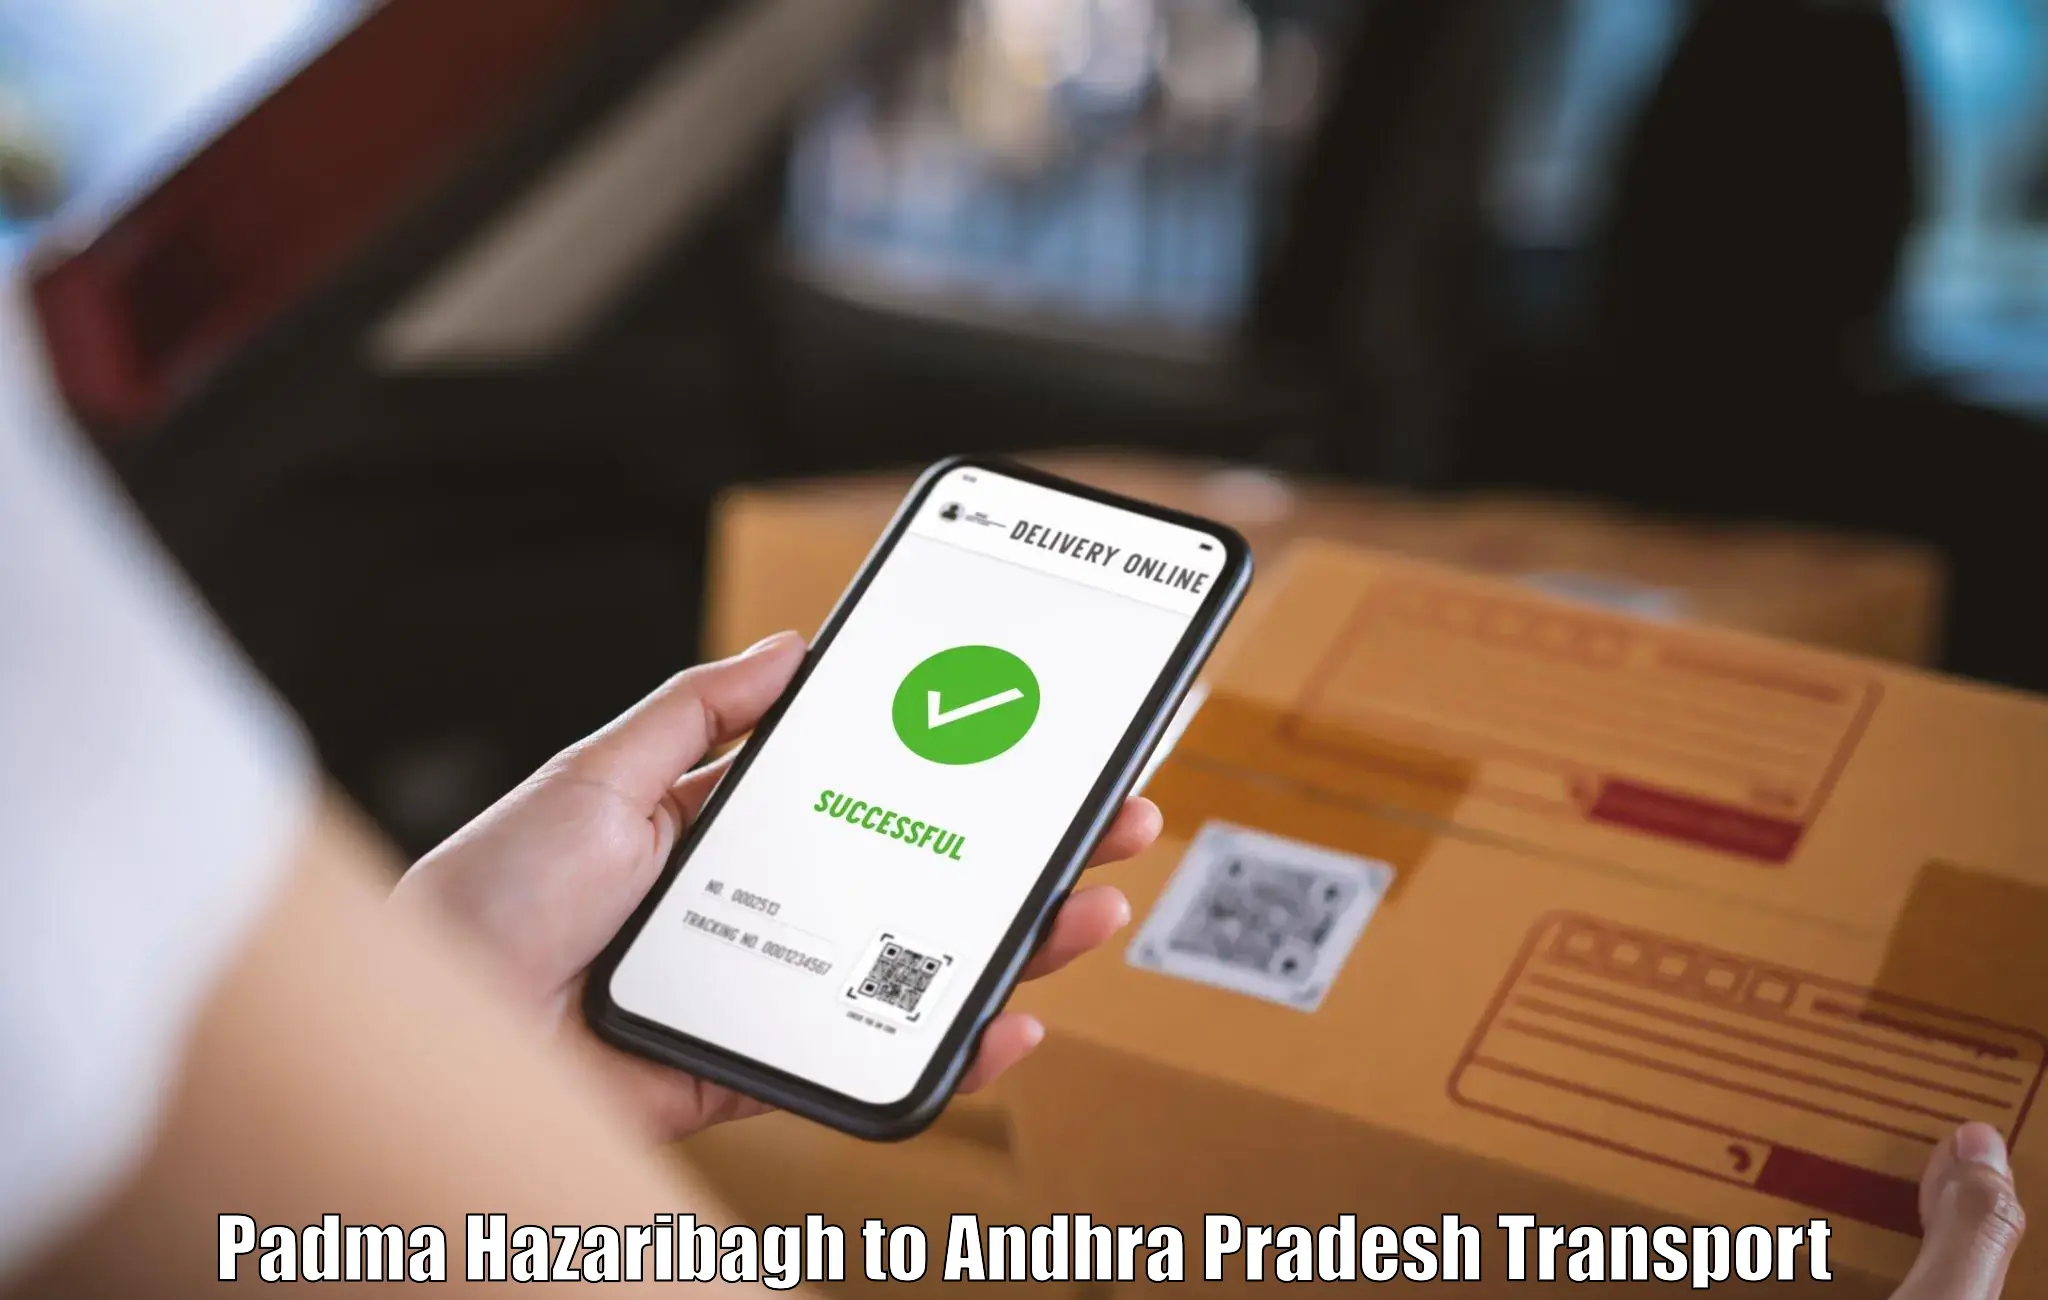 Pick up transport service Padma Hazaribagh to Kalyandurg